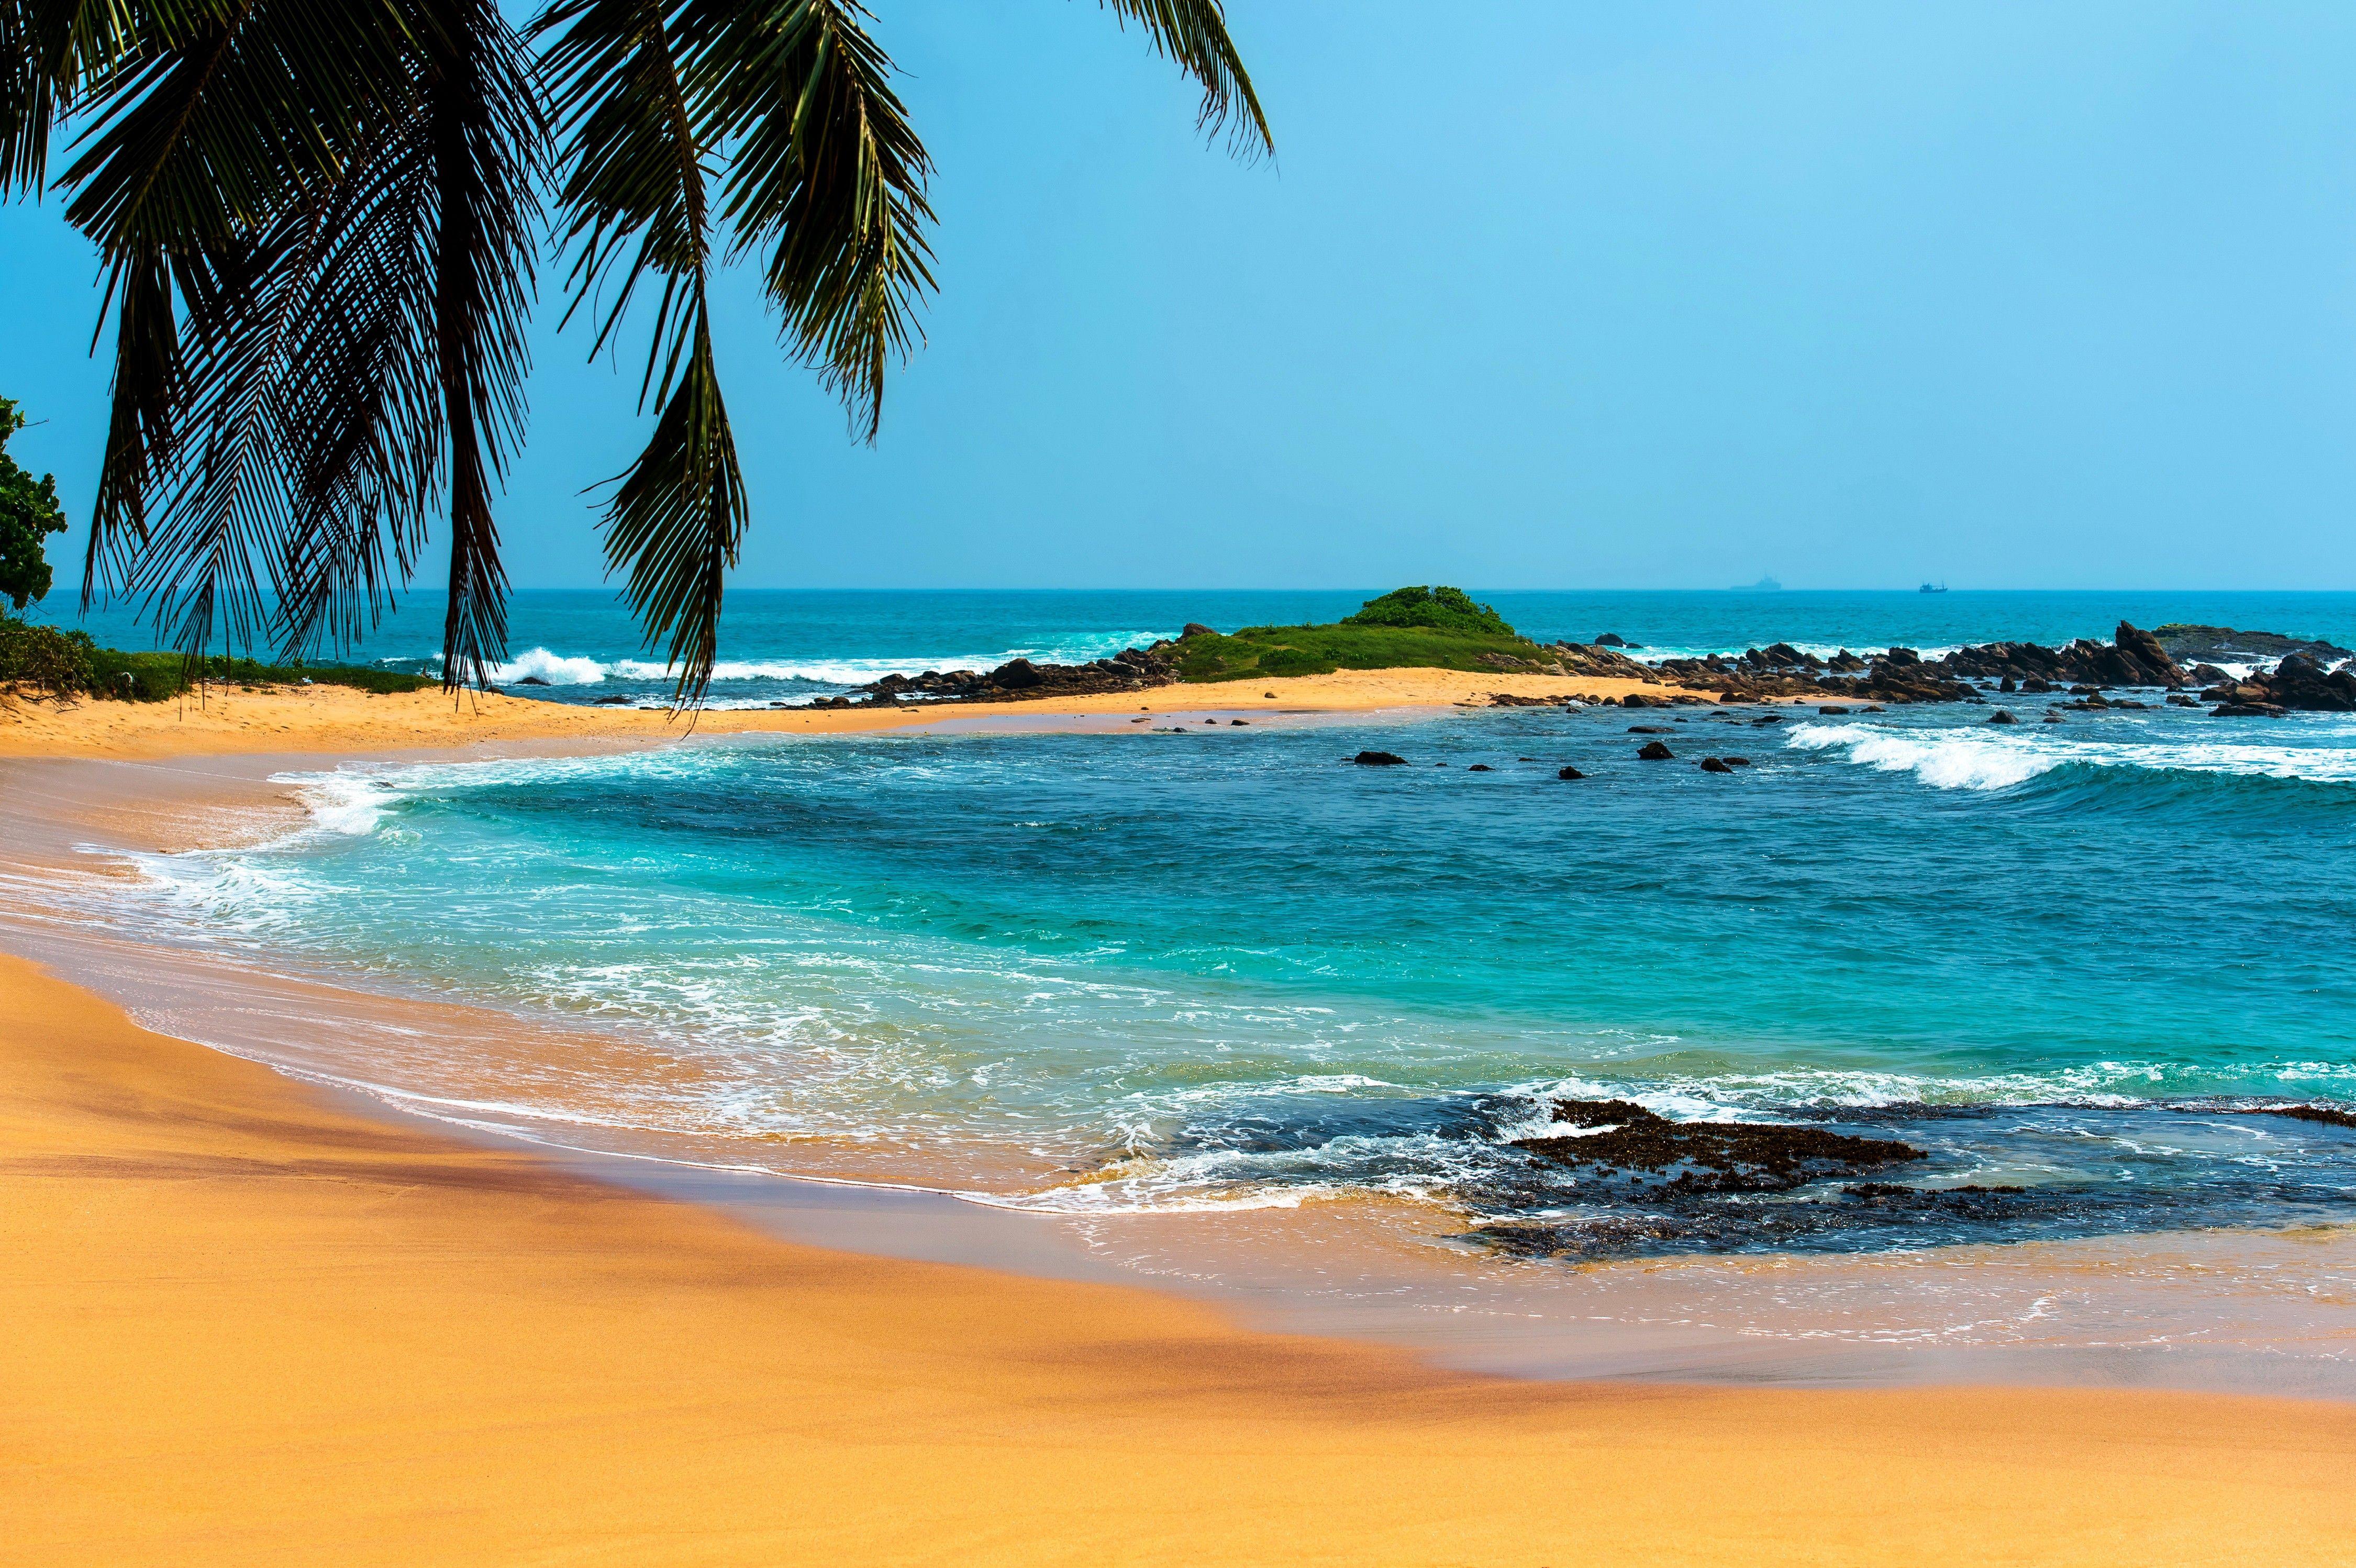 4500 x 2995 · jpeg - Tropical Beach Landscape Wallpapers - Top Free Tropical Beach Landscape ...